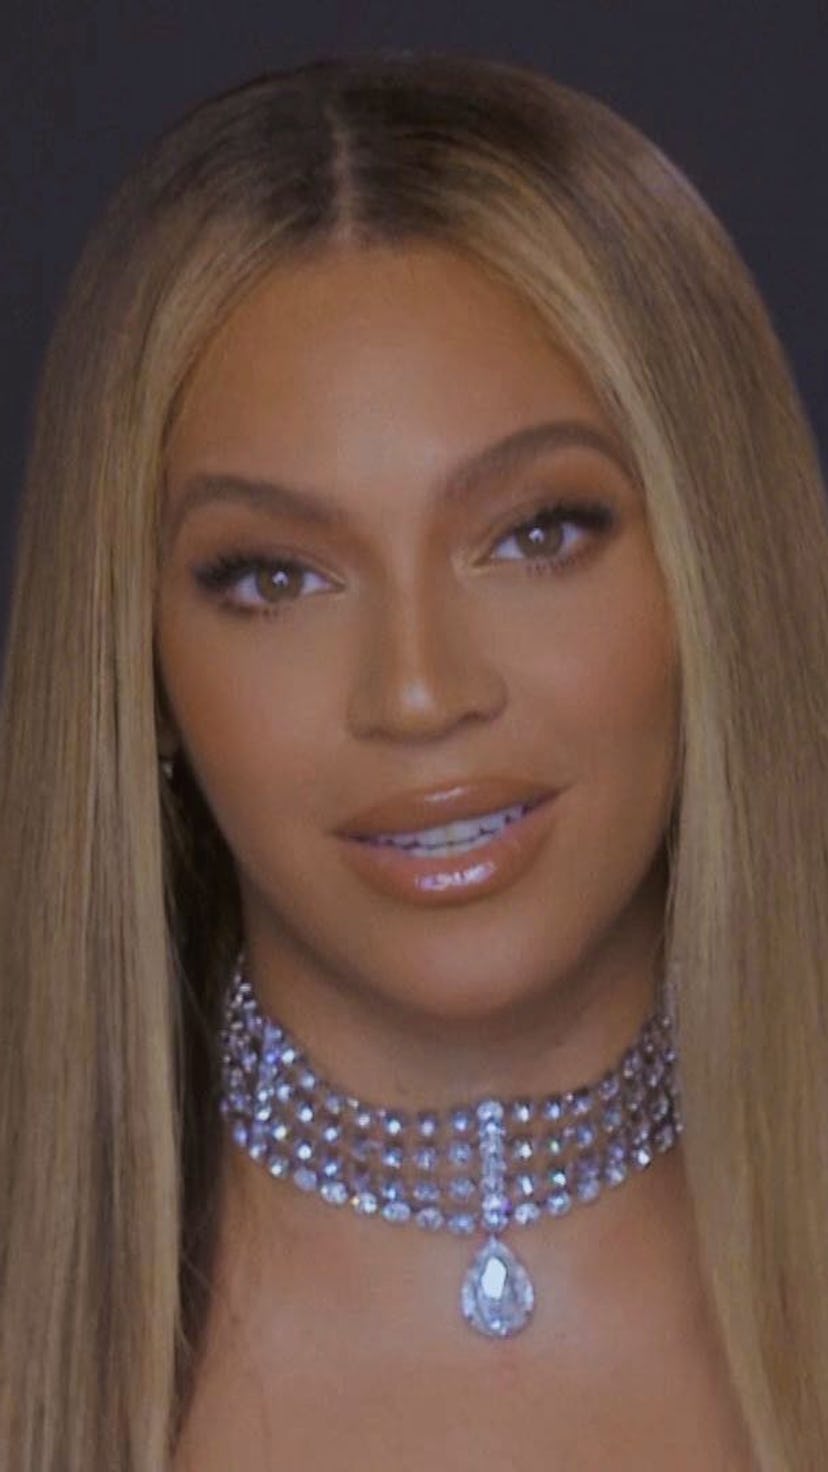 On June 20, Beyoncé dropped her new single, “Break My Soul."